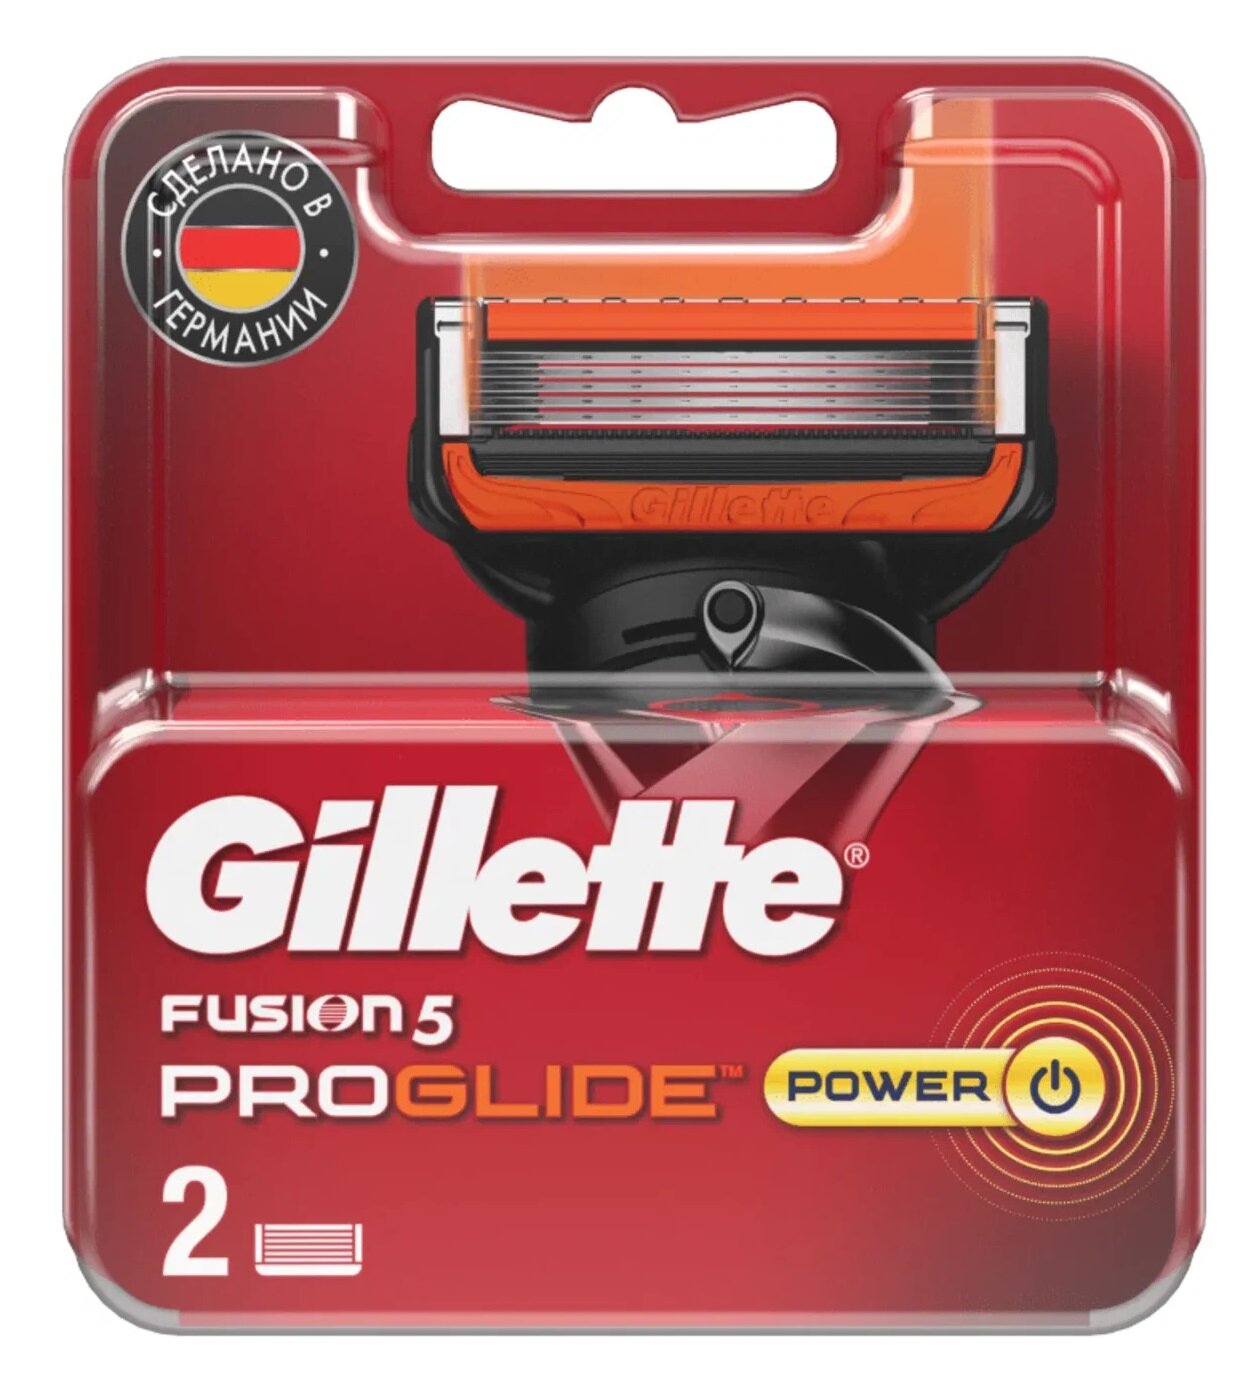 Сменные кассеты для станка Gillette FUSION5 ProGlide POWER, 2 шт.